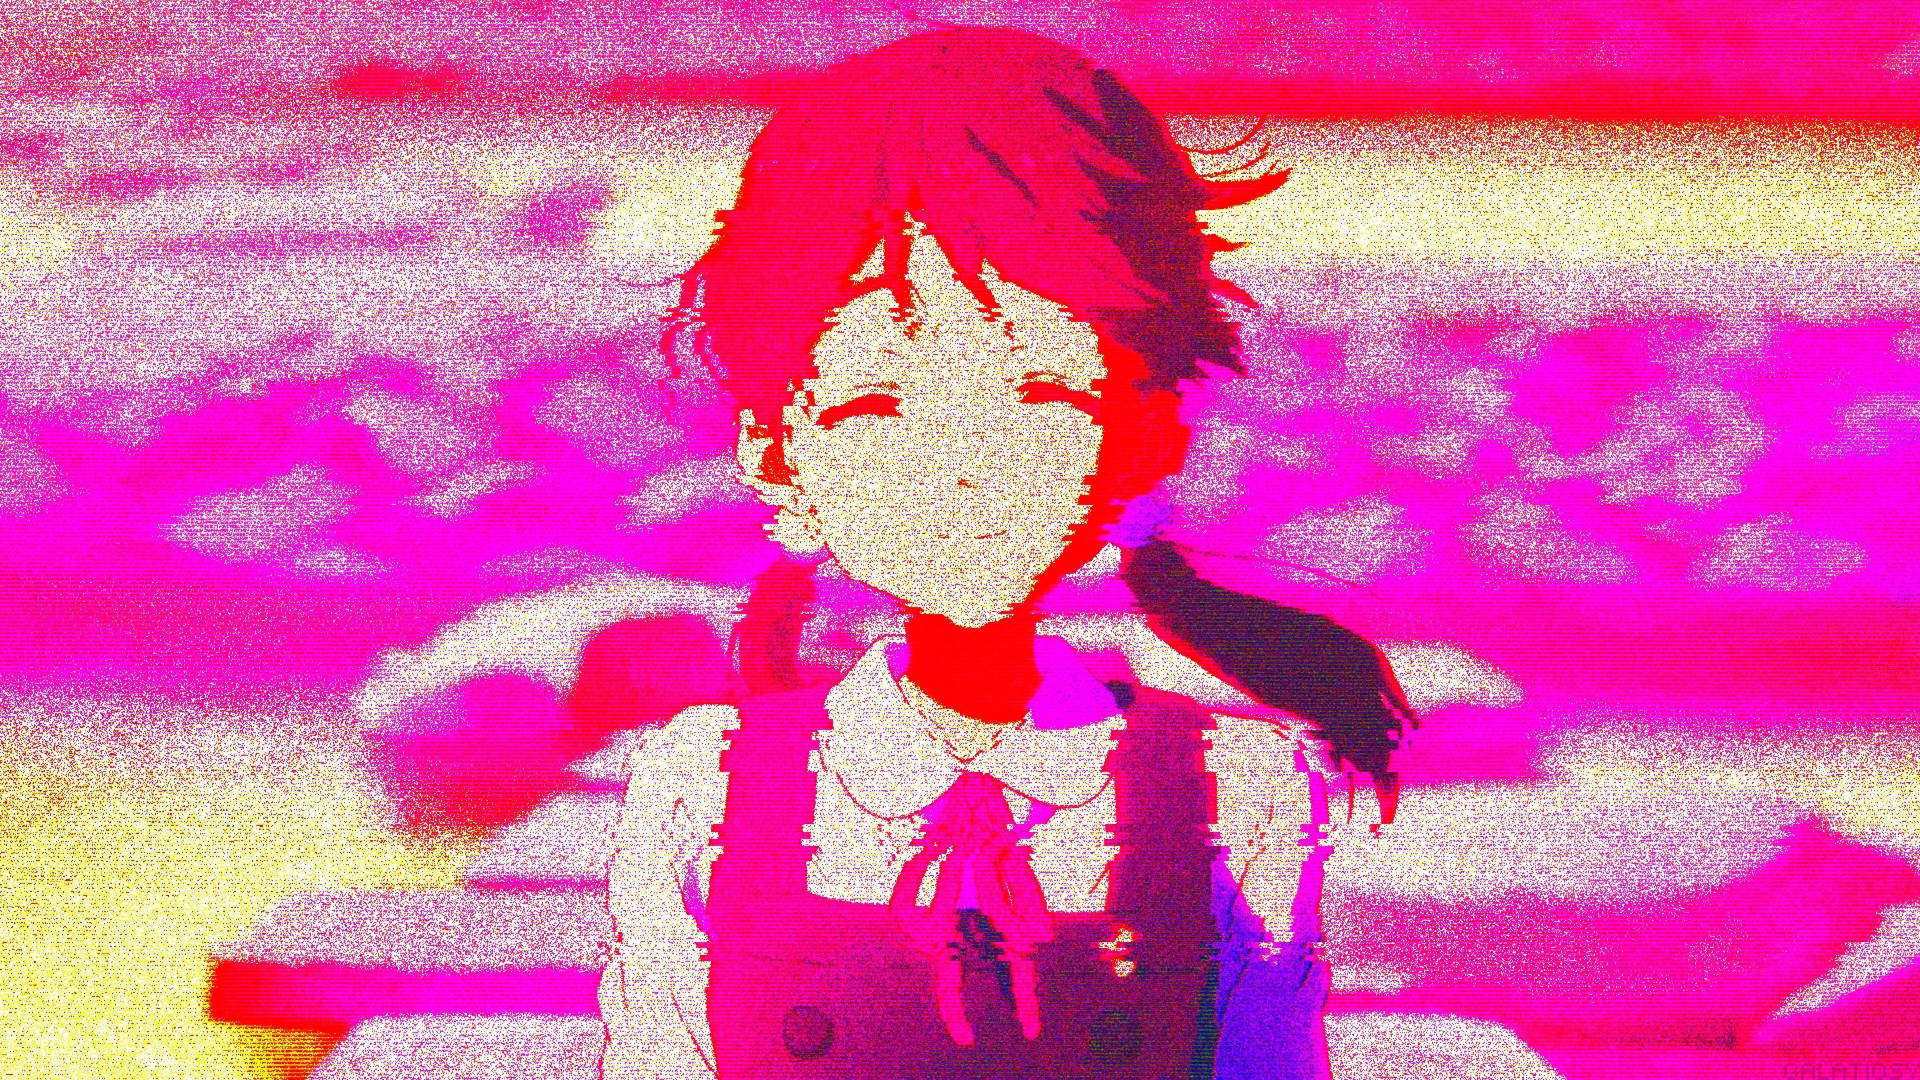 Aesthetic Anime Girl Tamako Background